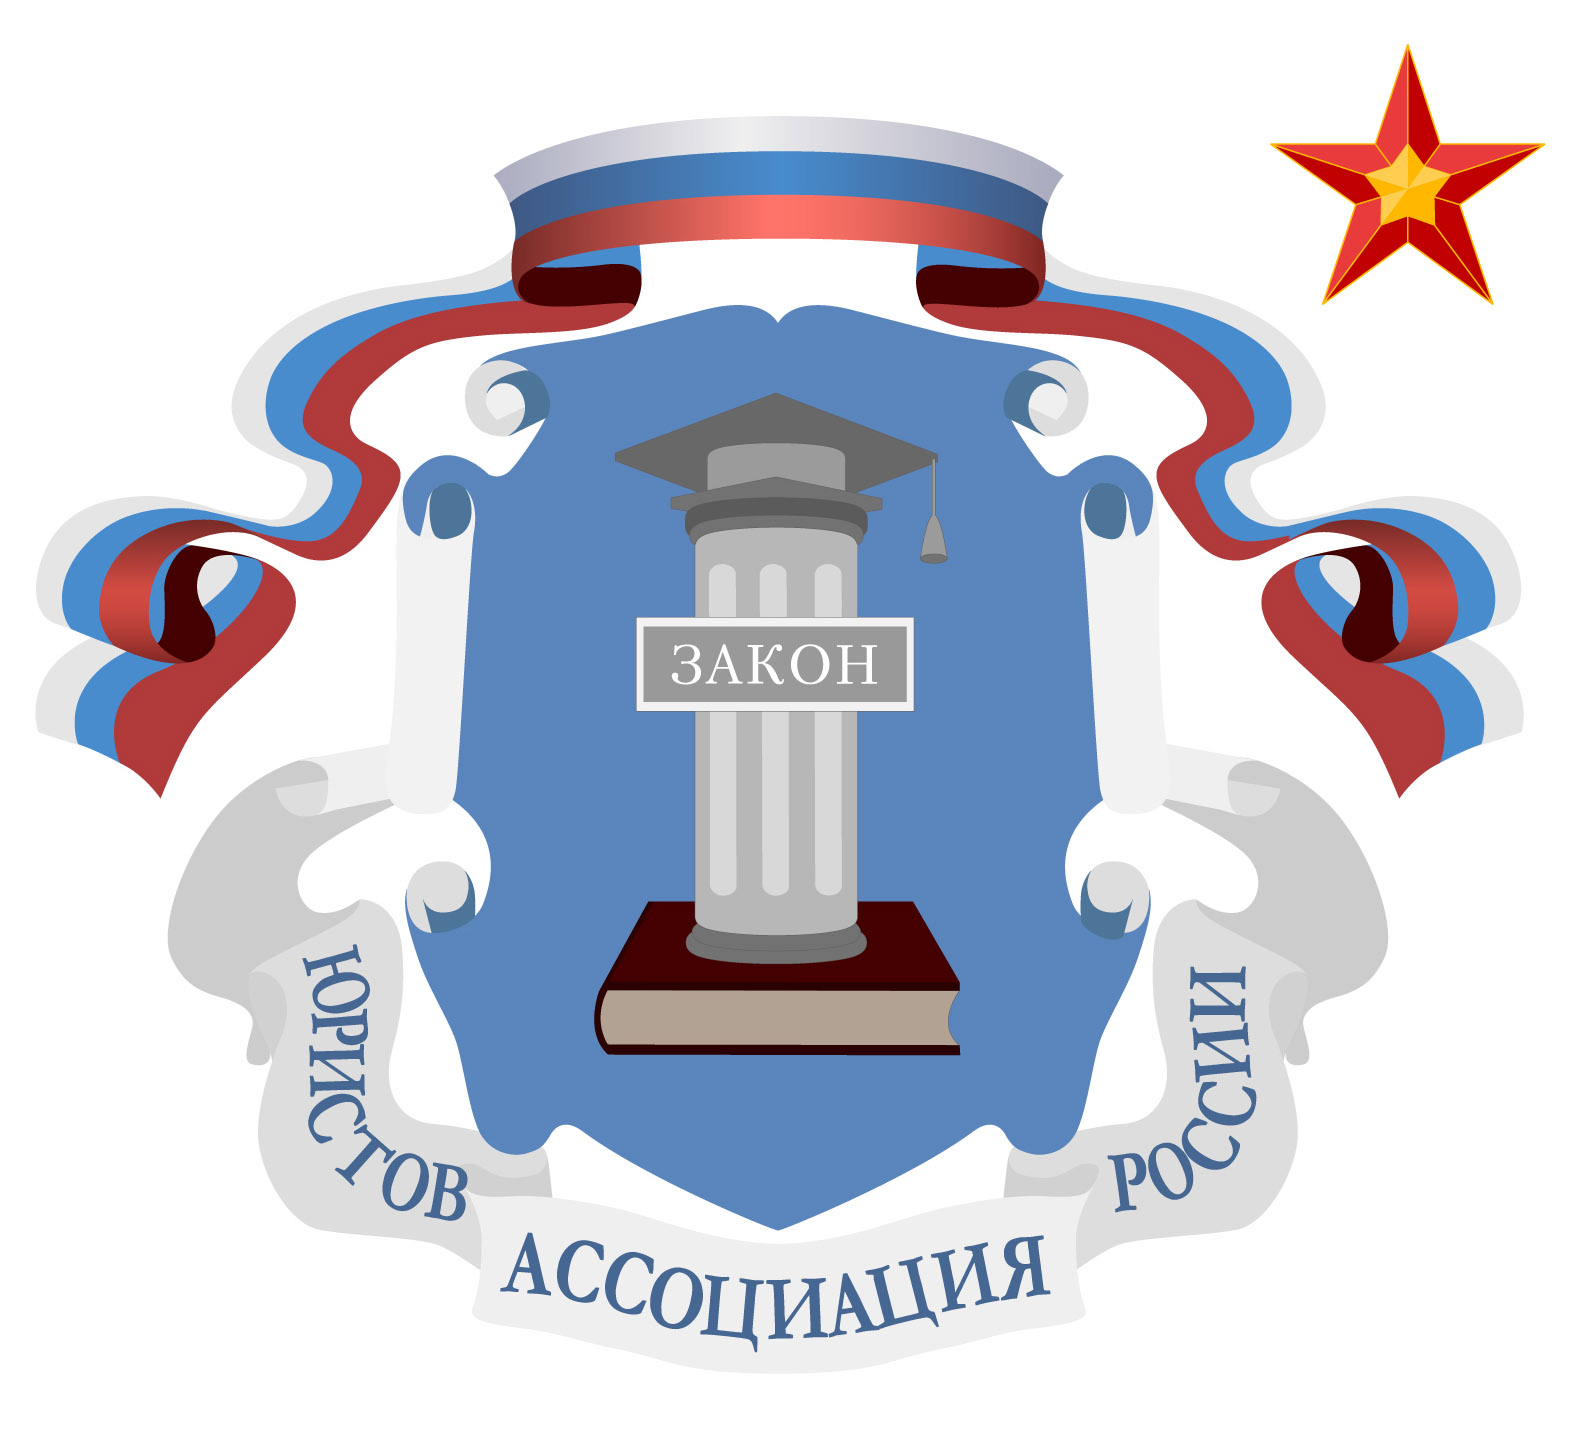 Московское отделение Ассоциации юристов России